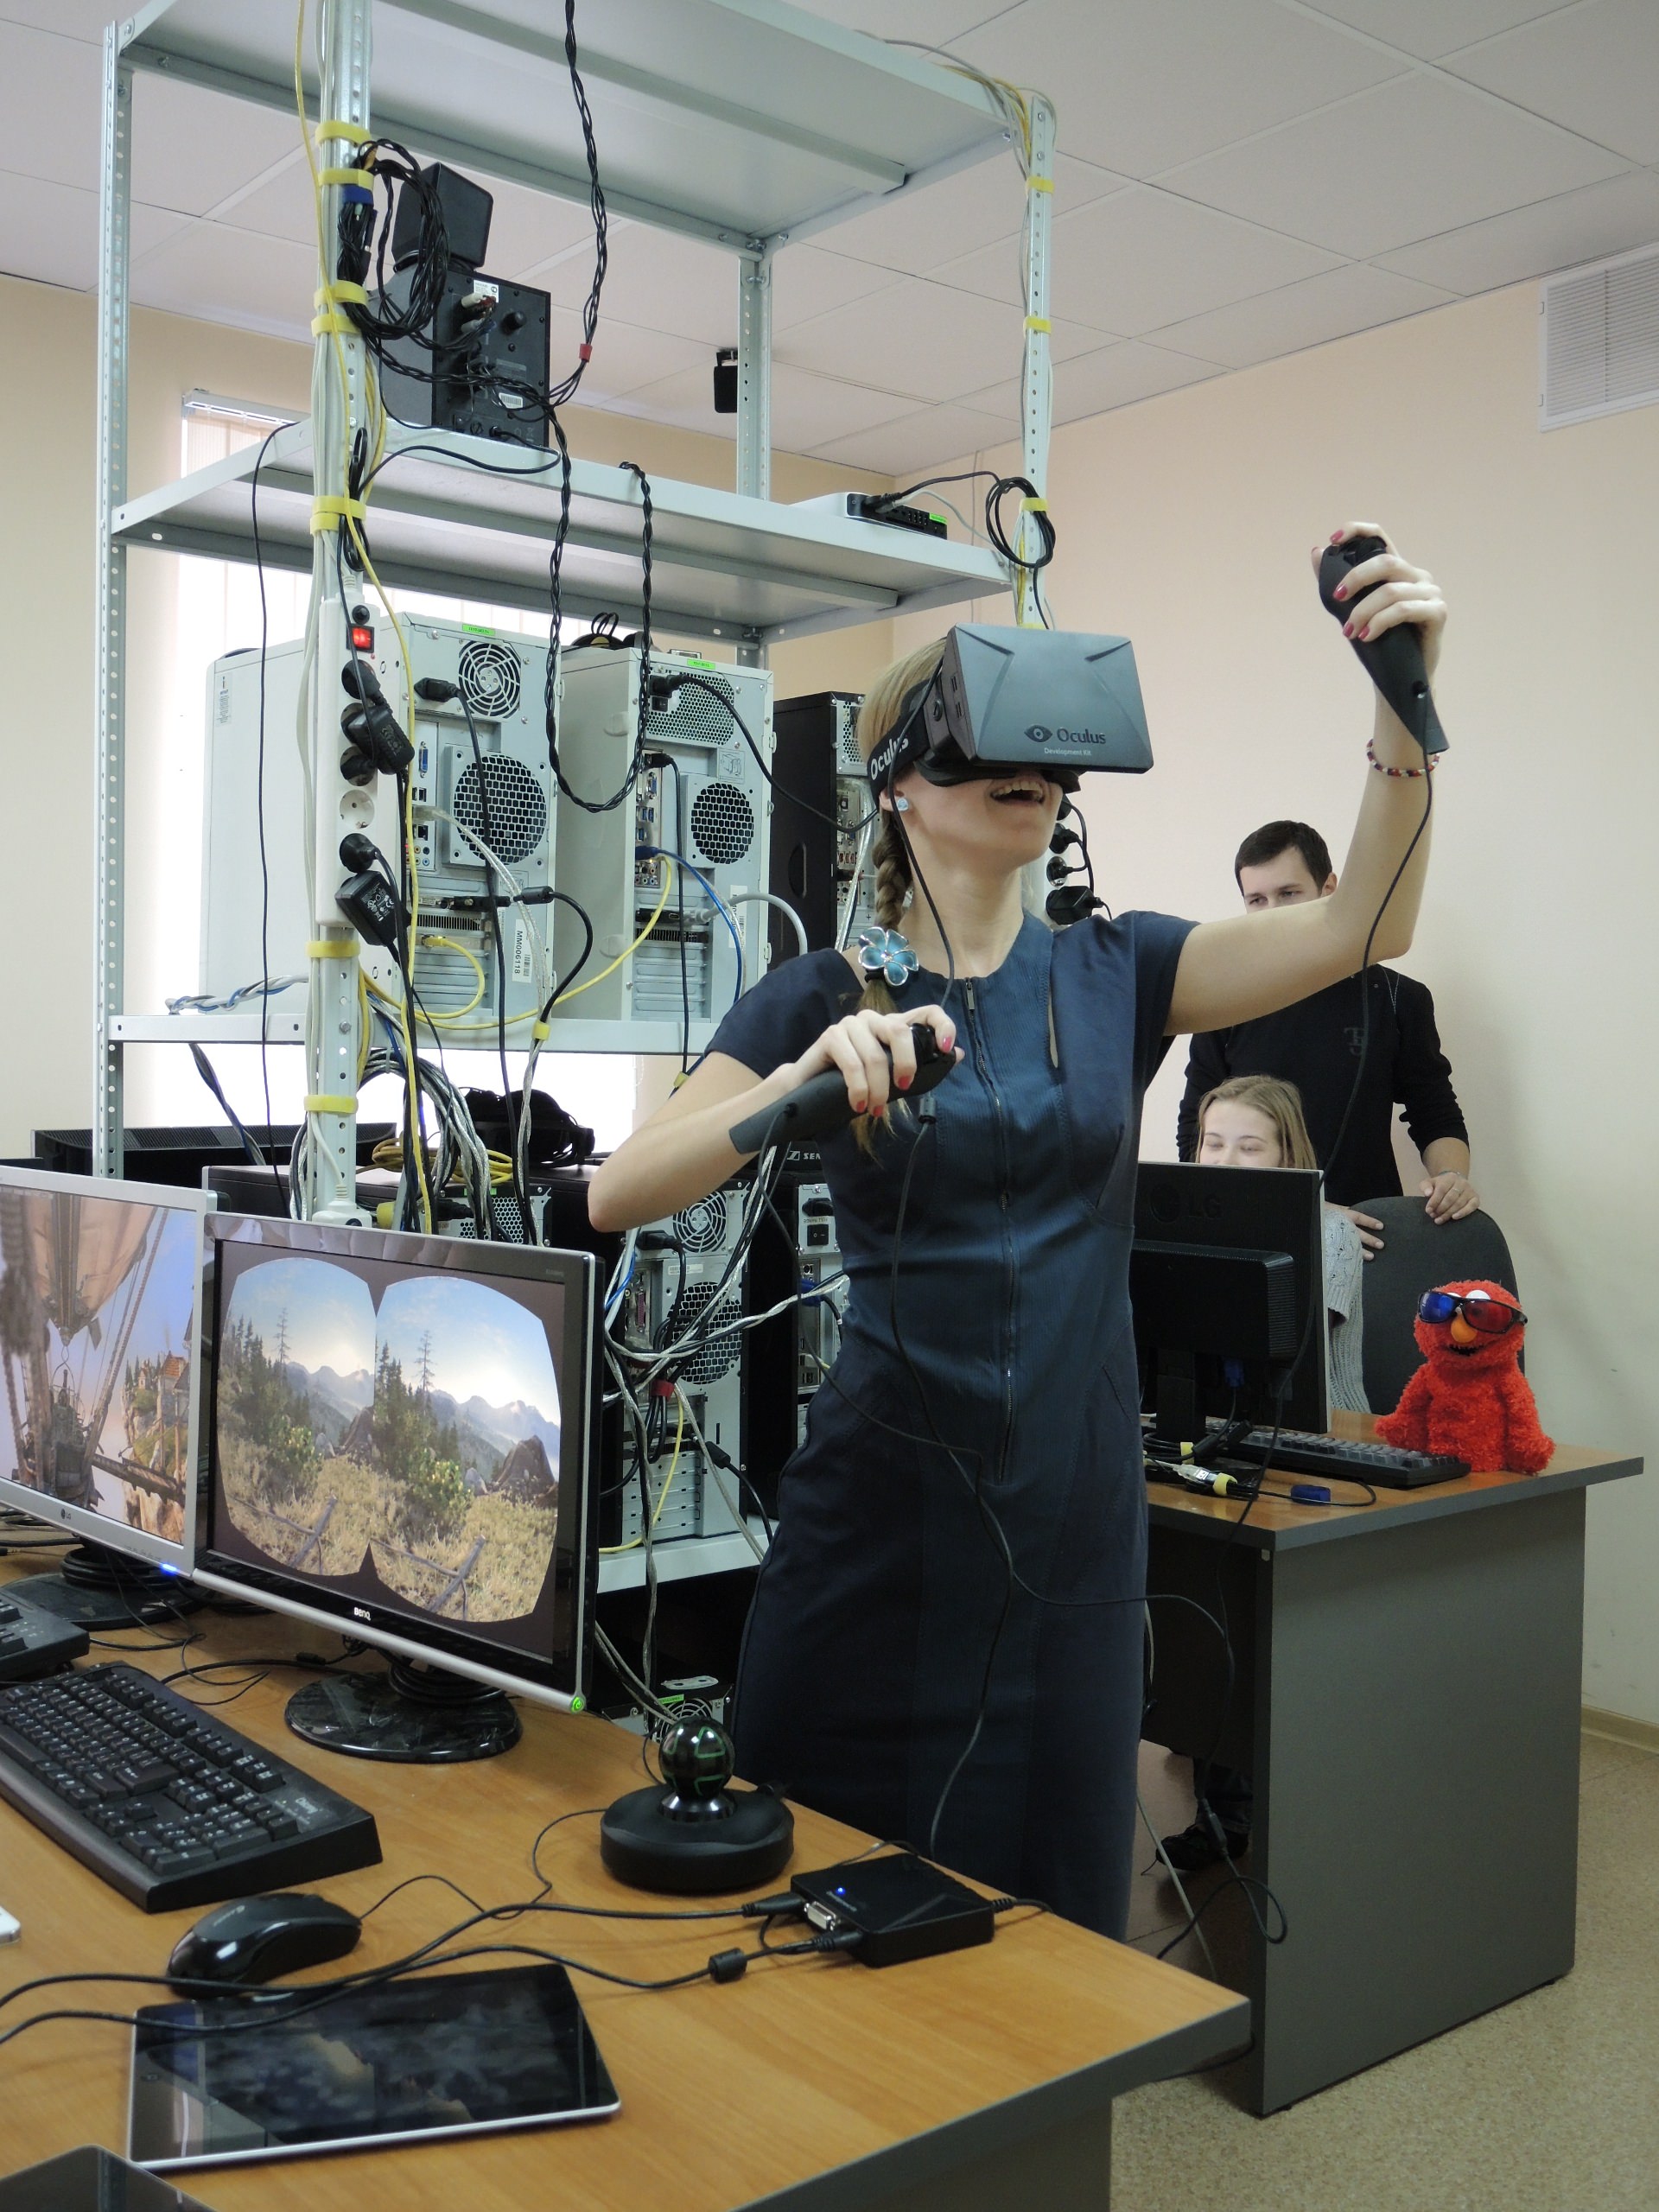 Vr testing. Технологии виртуальной реальности. Компьютерное моделирование и виртуальная реальность. VR В промышленности. 3d моделирование в виртуальной реальности.